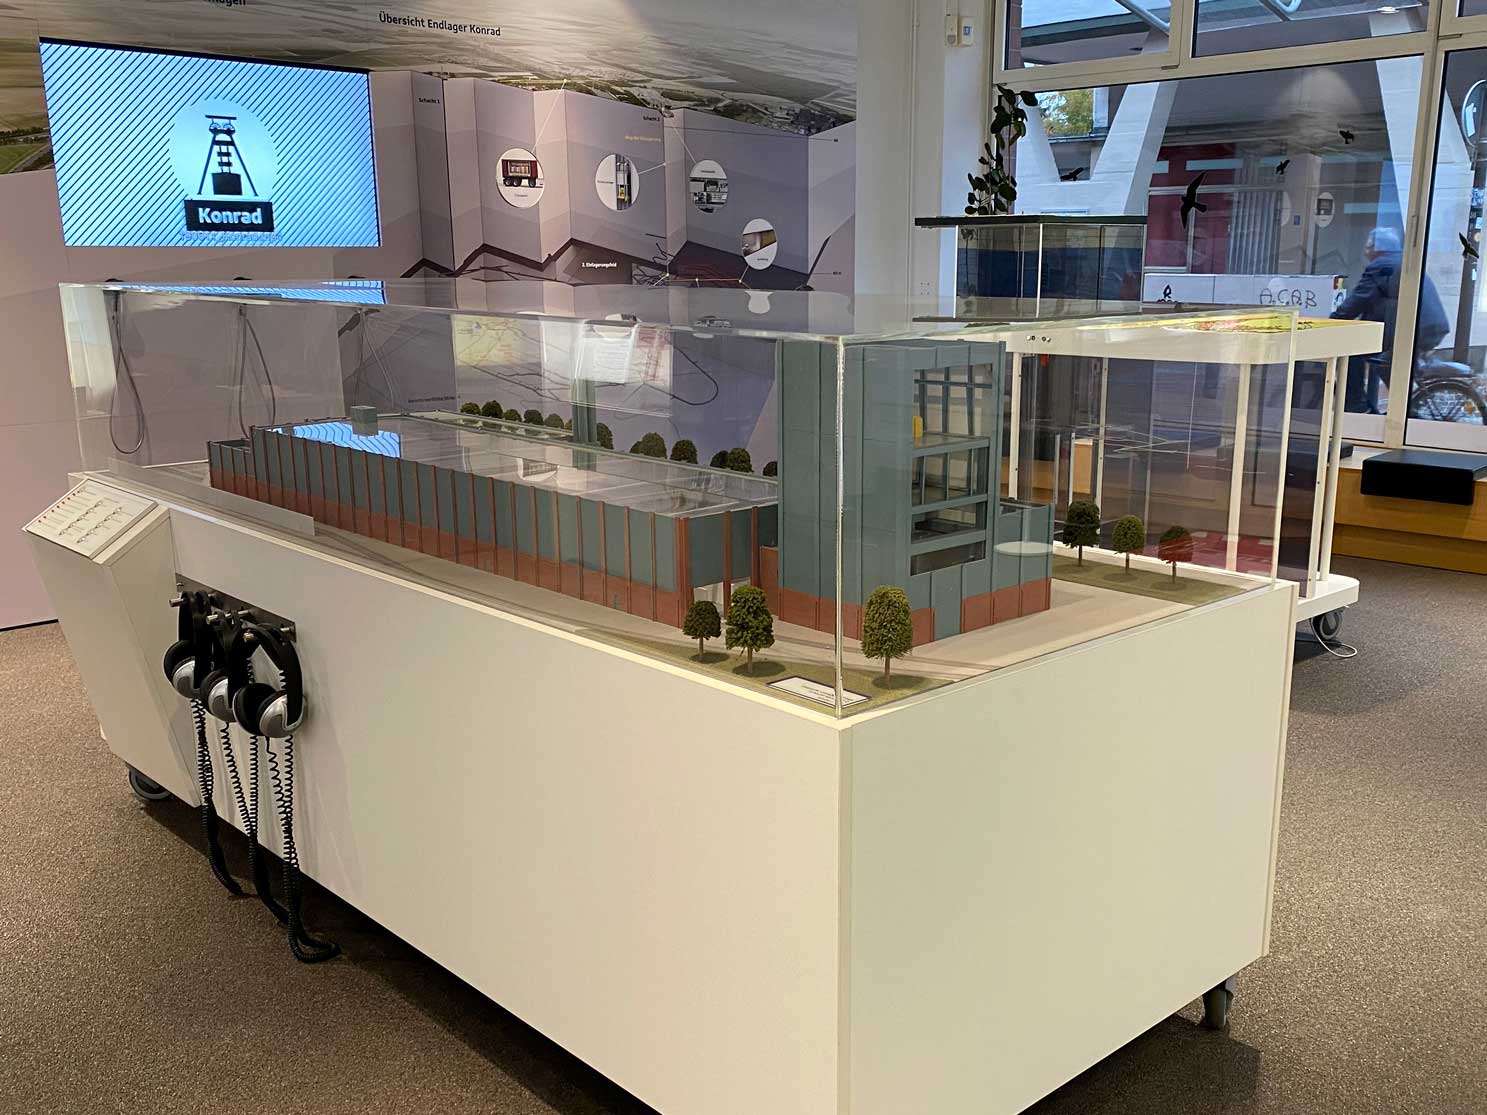 Ein dreidimensionales Modell eines Gebäudes steht im Ausstellungsraum der Infostelle Konrad